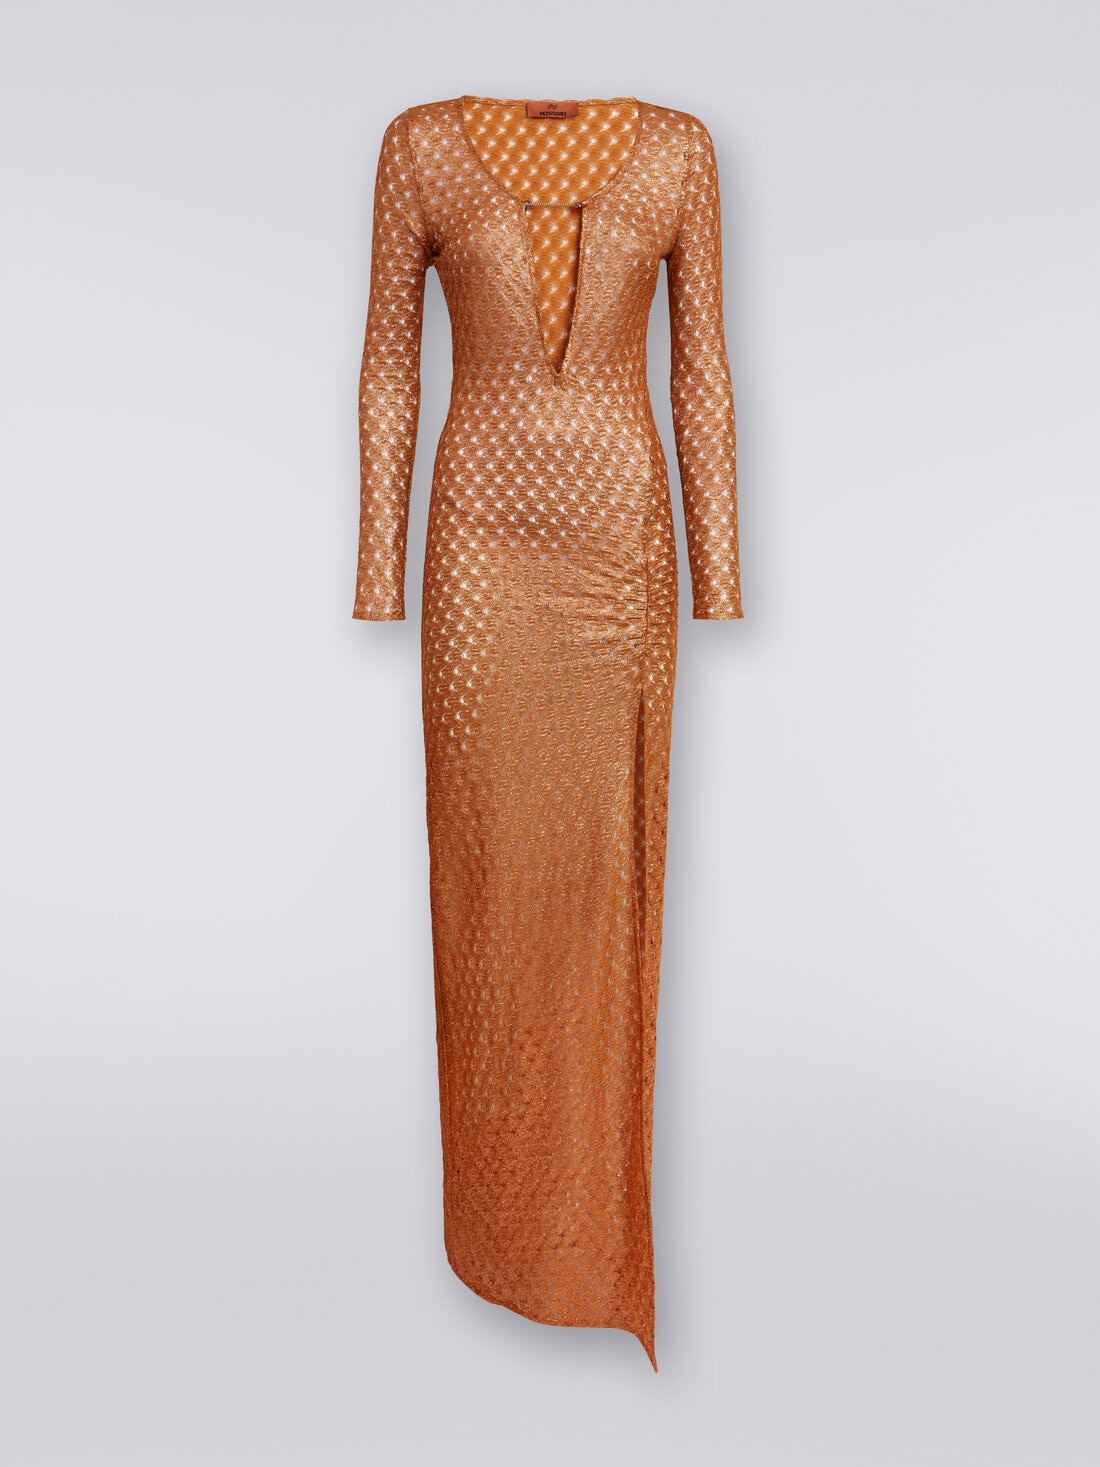 Langes Kleid in Spitzenoptik mit V-Ausschnitt und Applikationen, Braun - MS24SQ01BR00TC71052 - 0